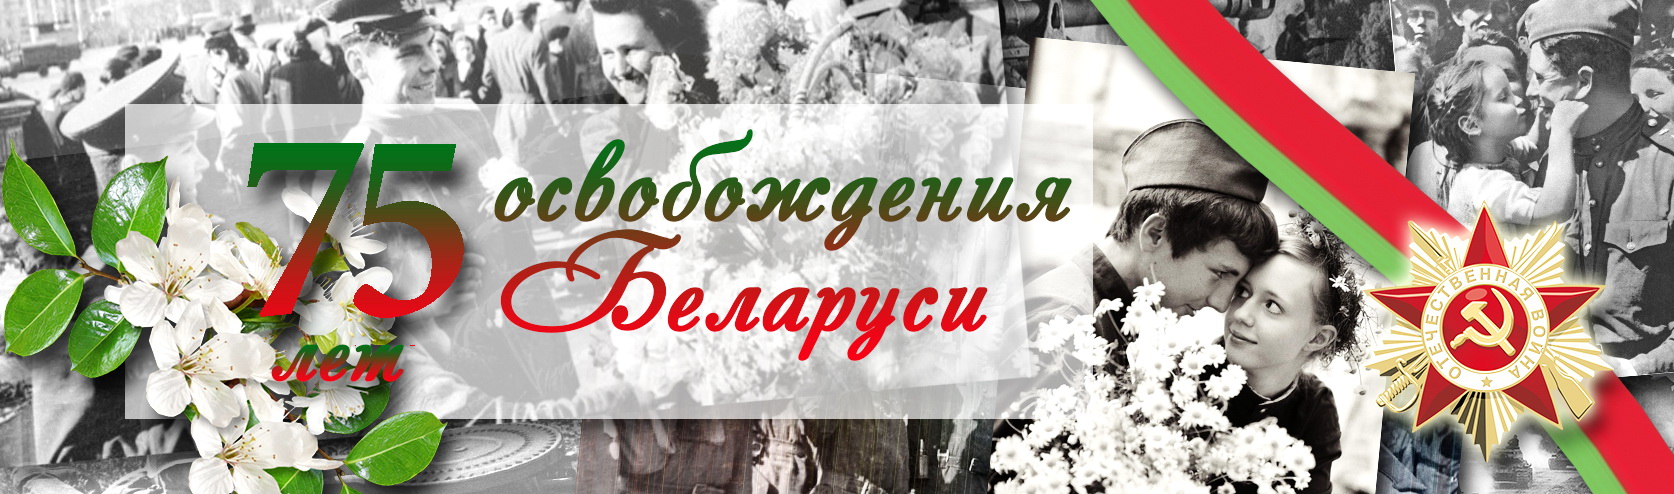 Логотип 80 лет освобождения беларуси